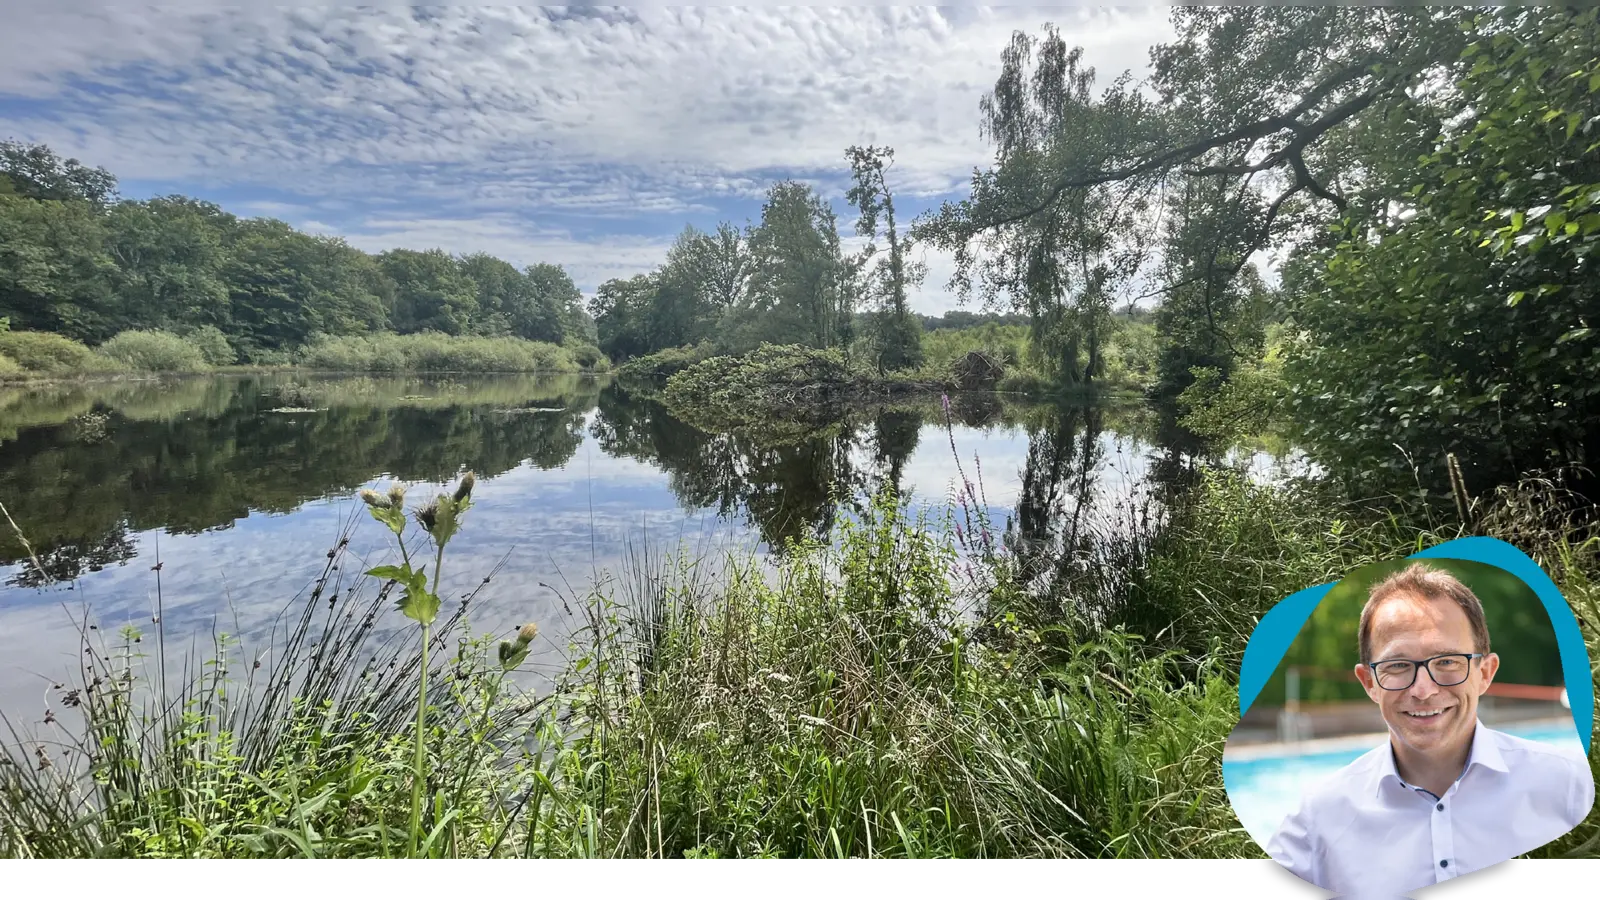 Natur pur gibt es am Rothbalzer Teich, in der Nähe des Zentrums Pfadfinden bei Immenhausen. (Foto: Sürder/Studio Blofield)